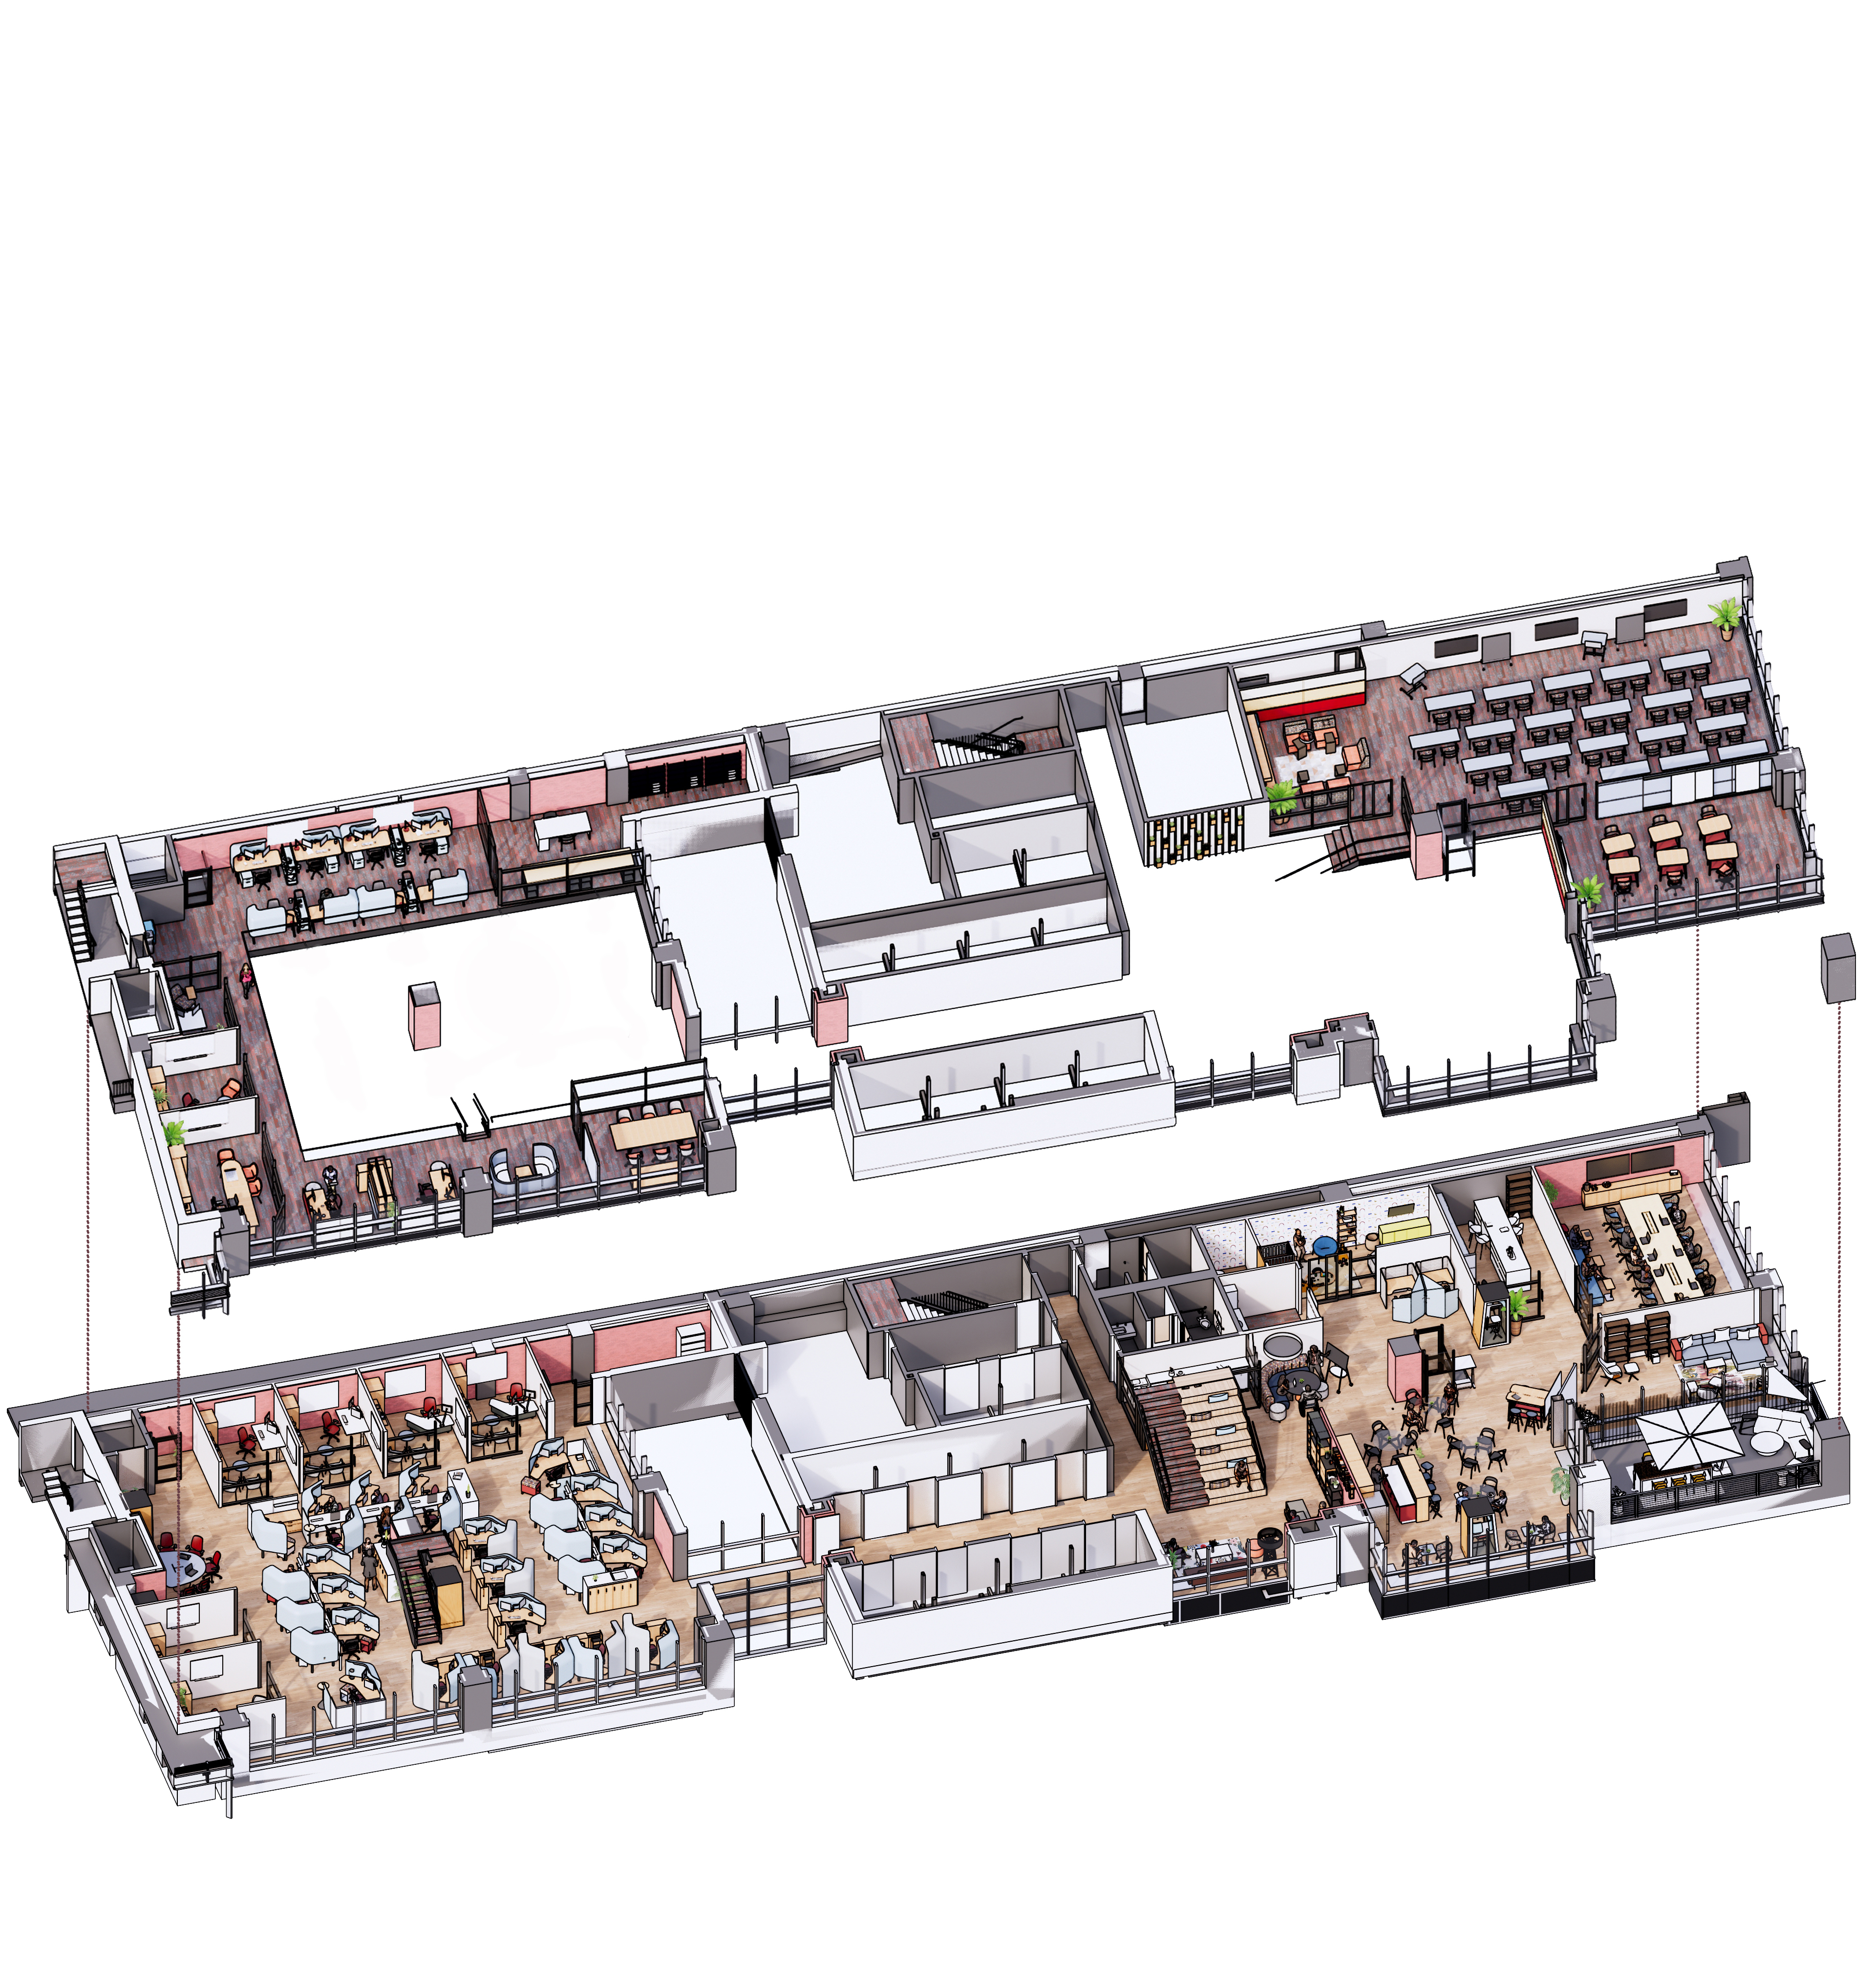 Dani_Jennings_3D FLOORPLAN - MEZZANINE - Sheet - A103 - 3D Mezzanine Floorplan.jpg